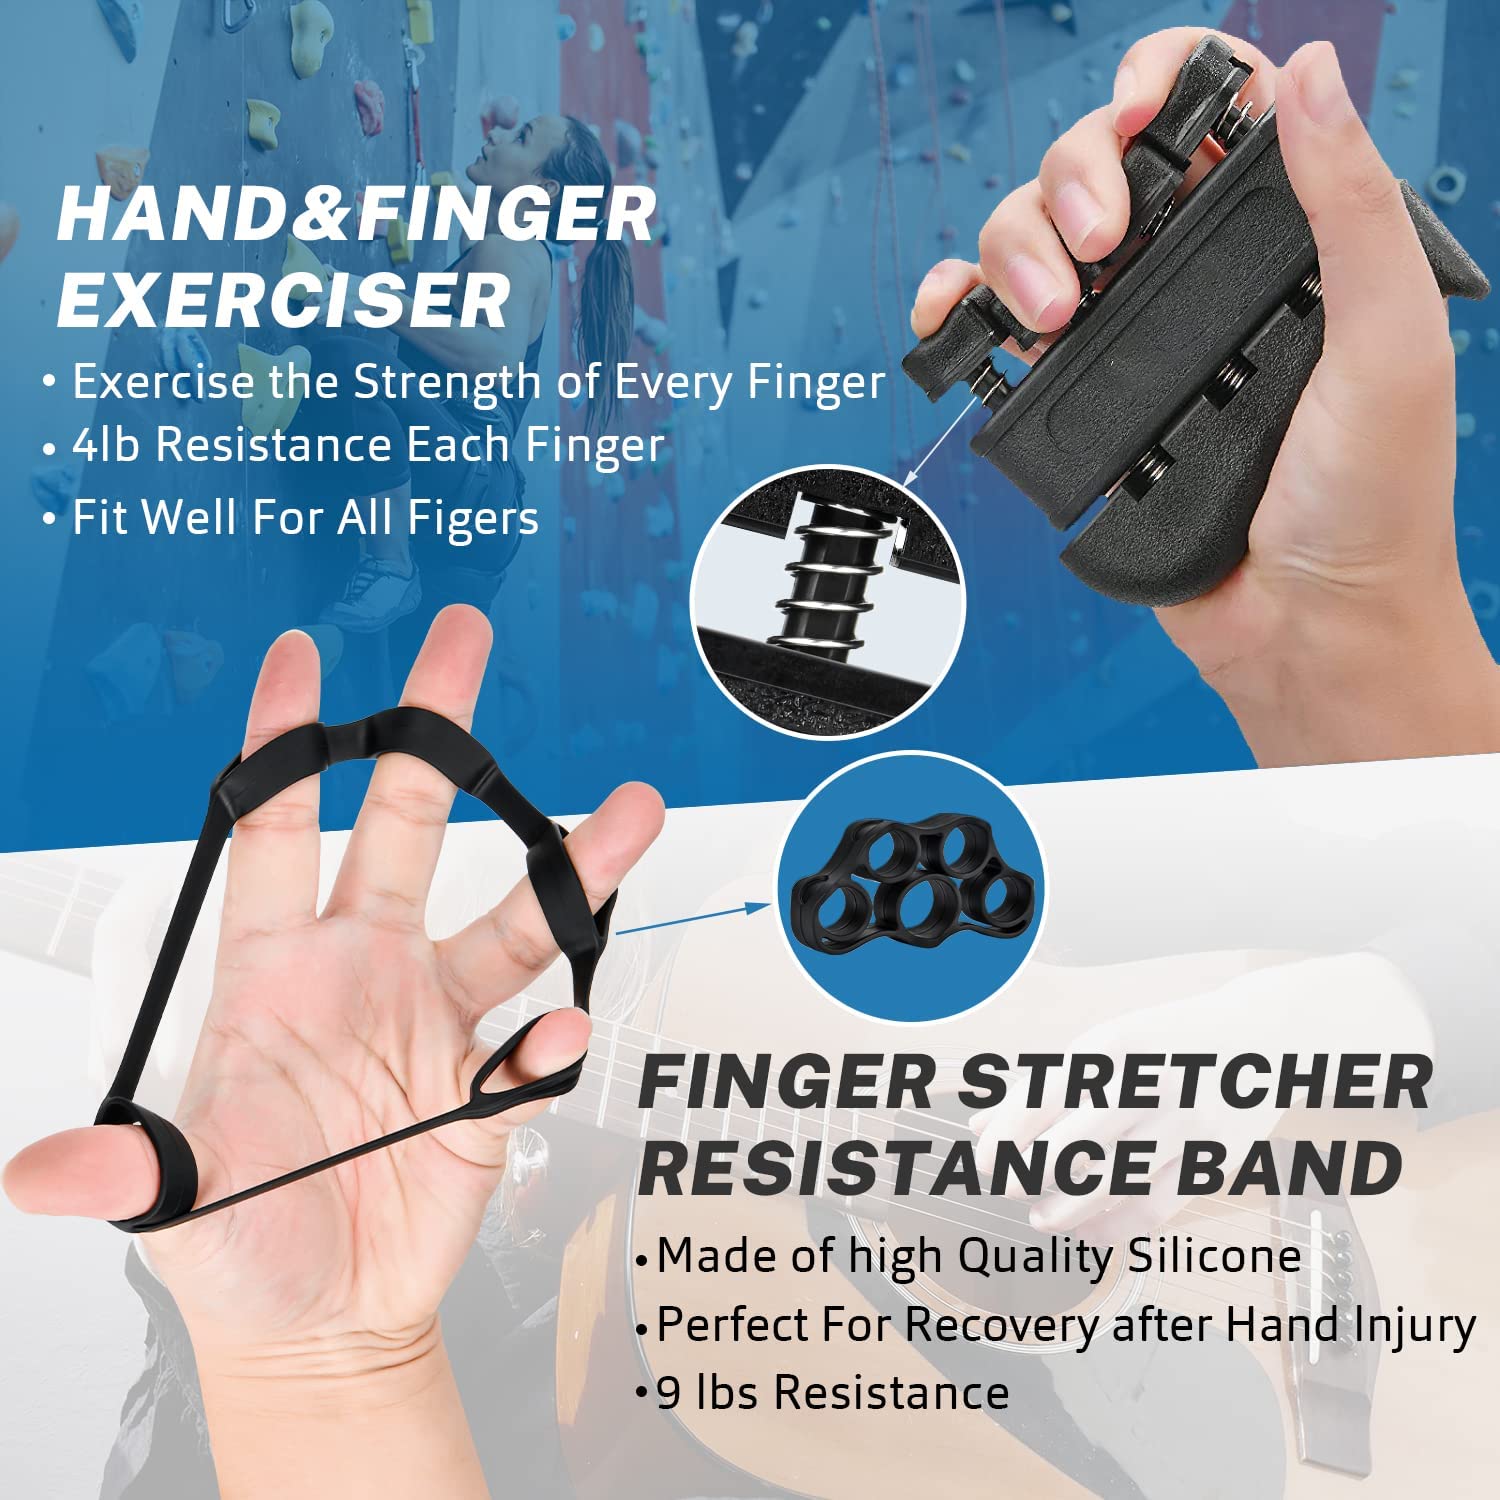 finger grip strengthener